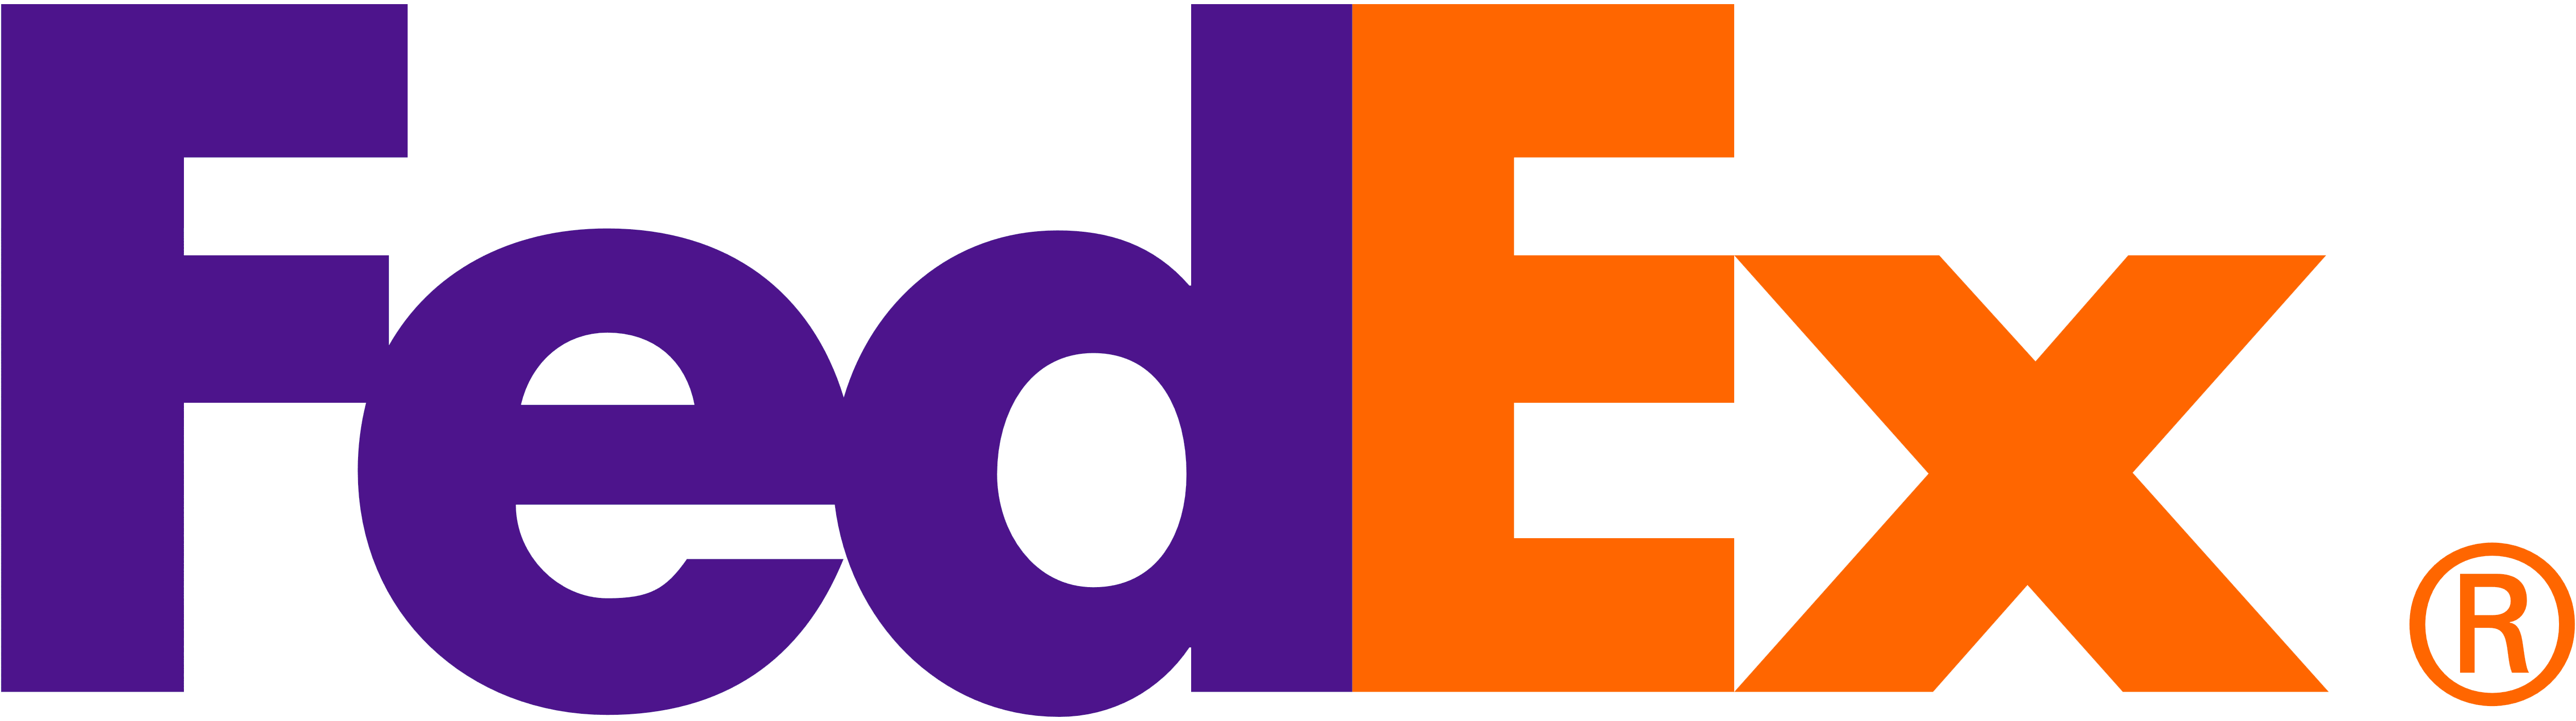 https://creativelogistics.com/wp-content/uploads/2021/05/Fedex-logo-min.png